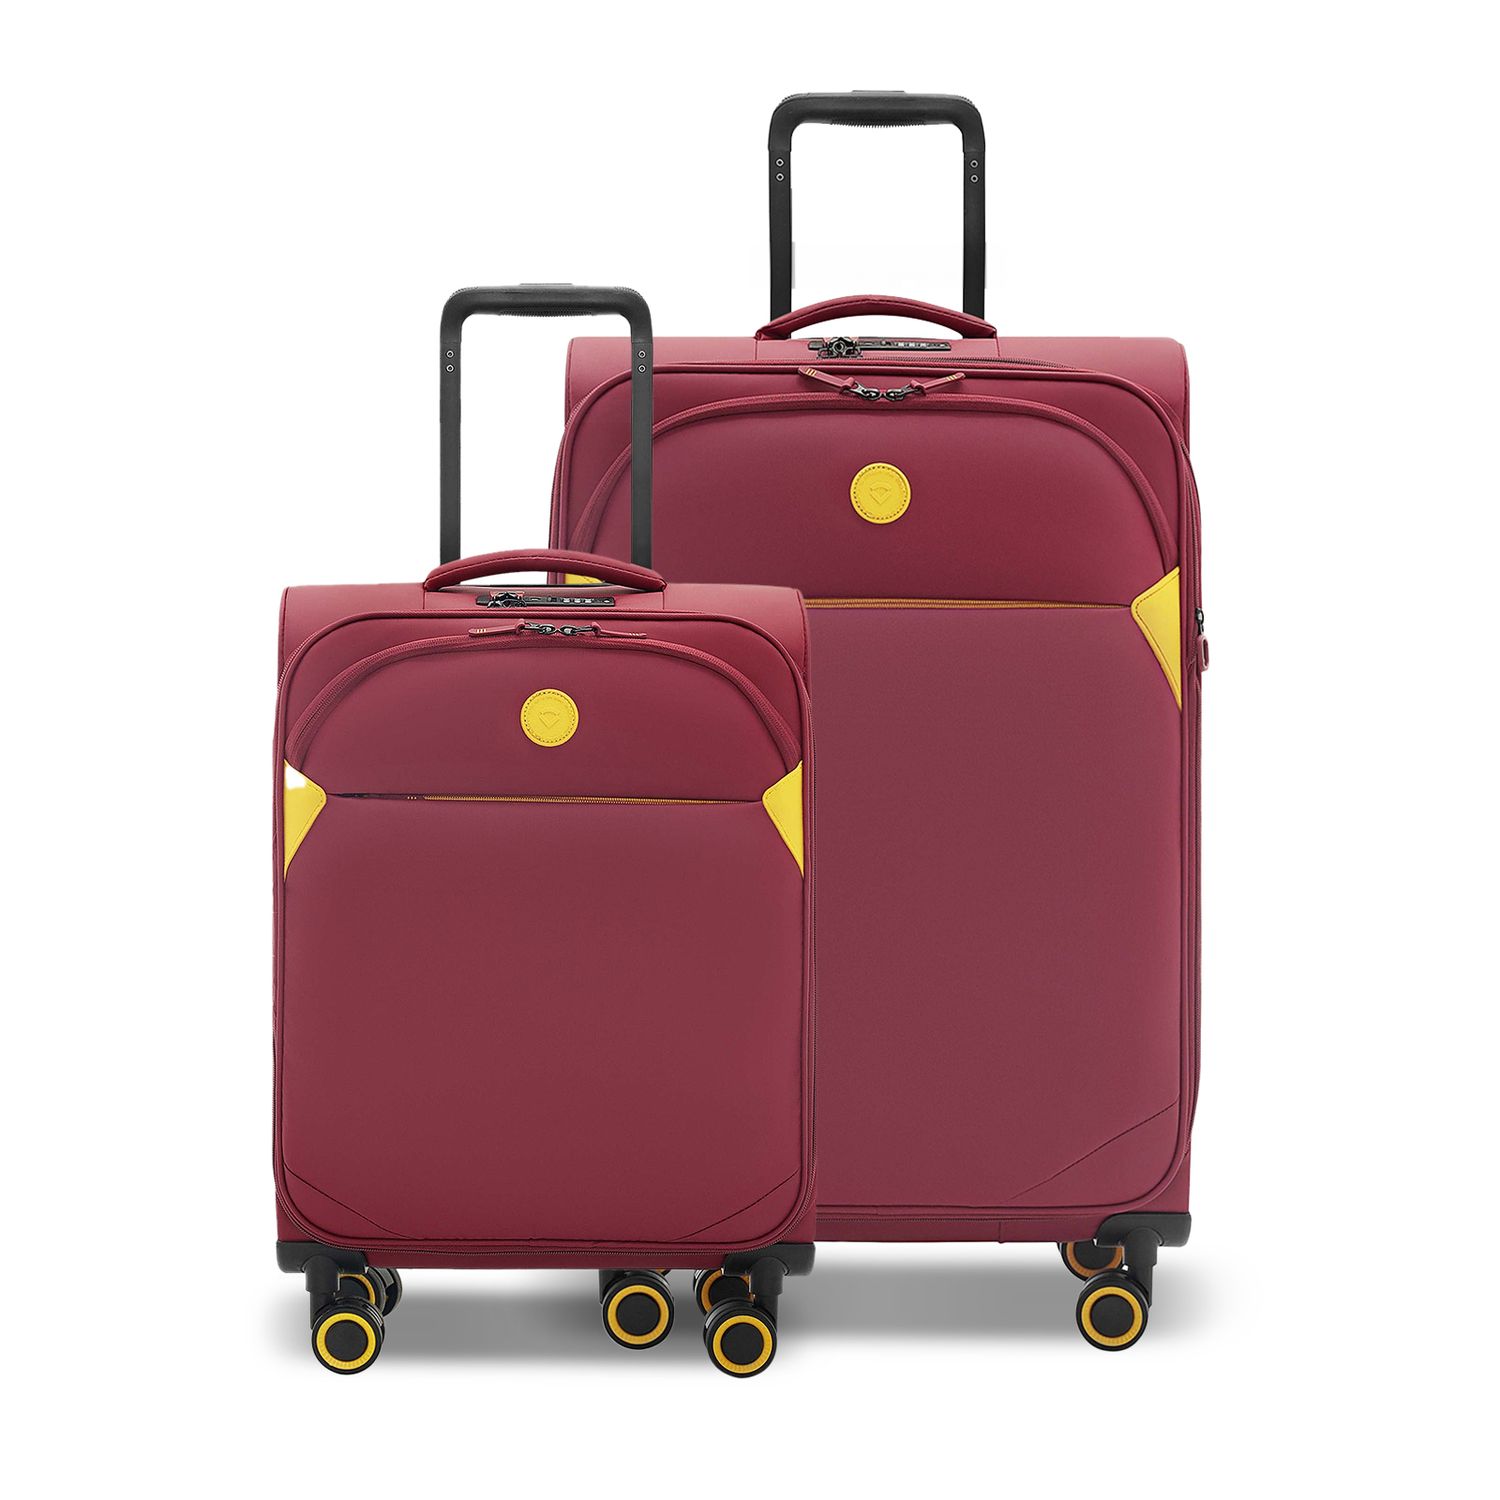 Suitcase set of 2 large